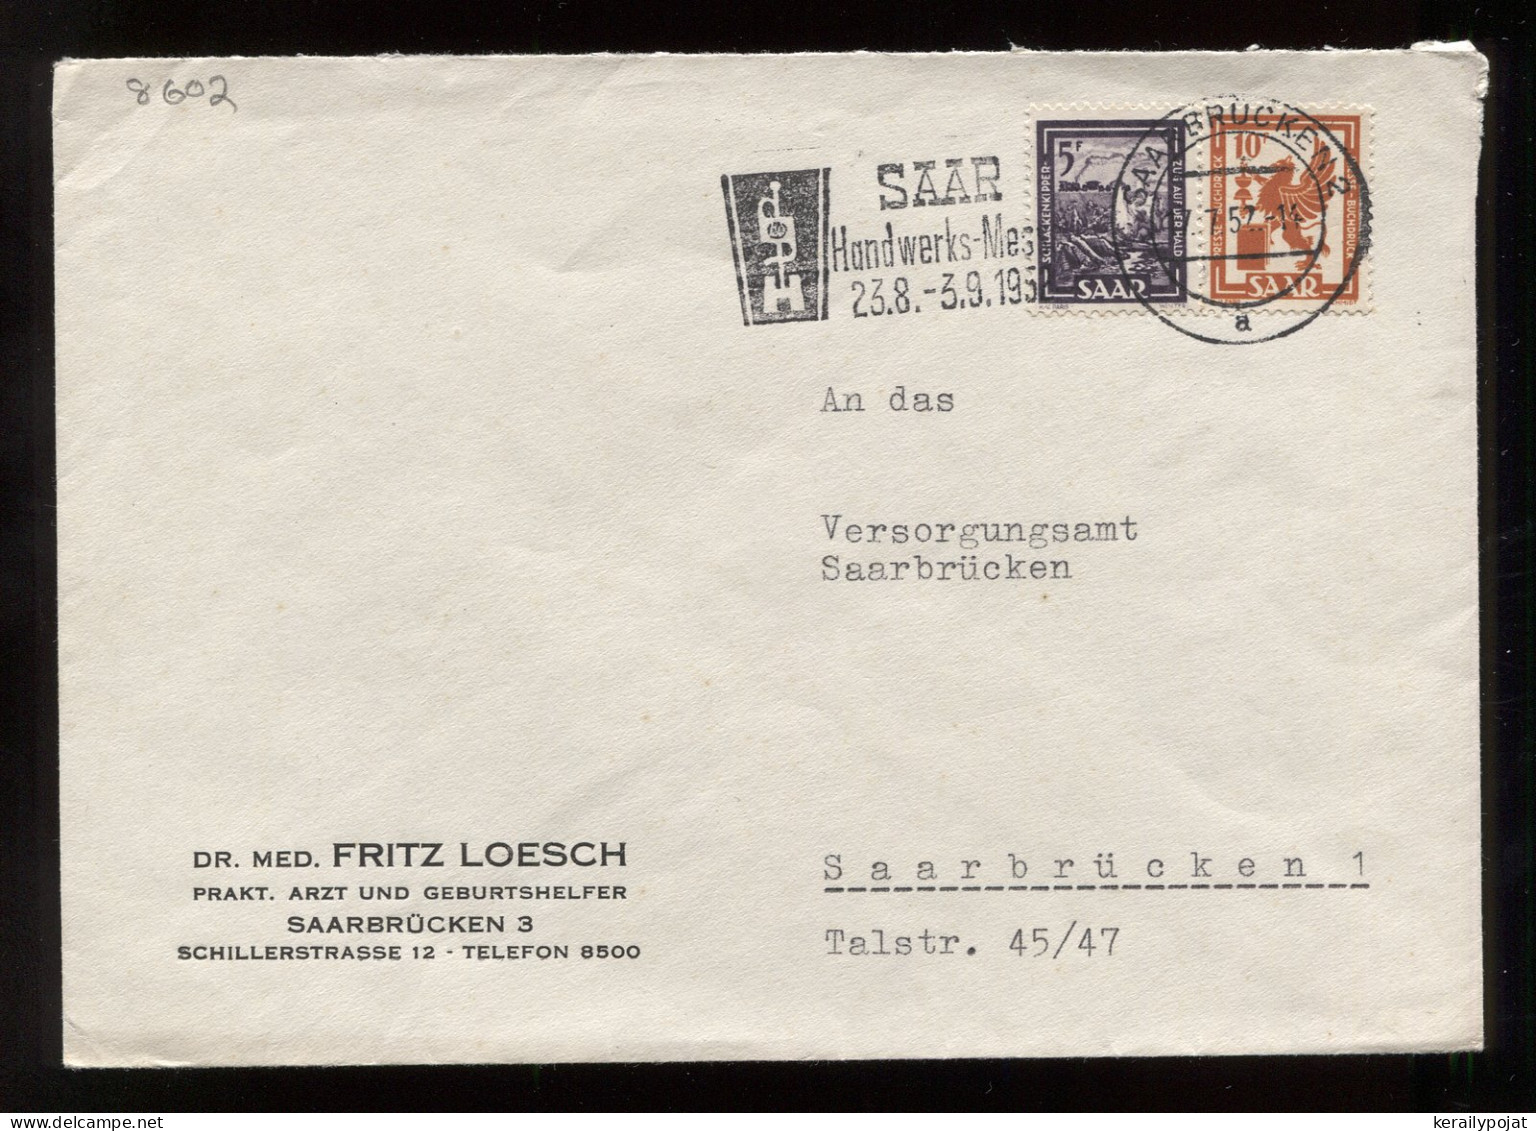 Saar 1957 Saarbrucken 2 Slogan Cancellation Cover__(8602) - Covers & Documents